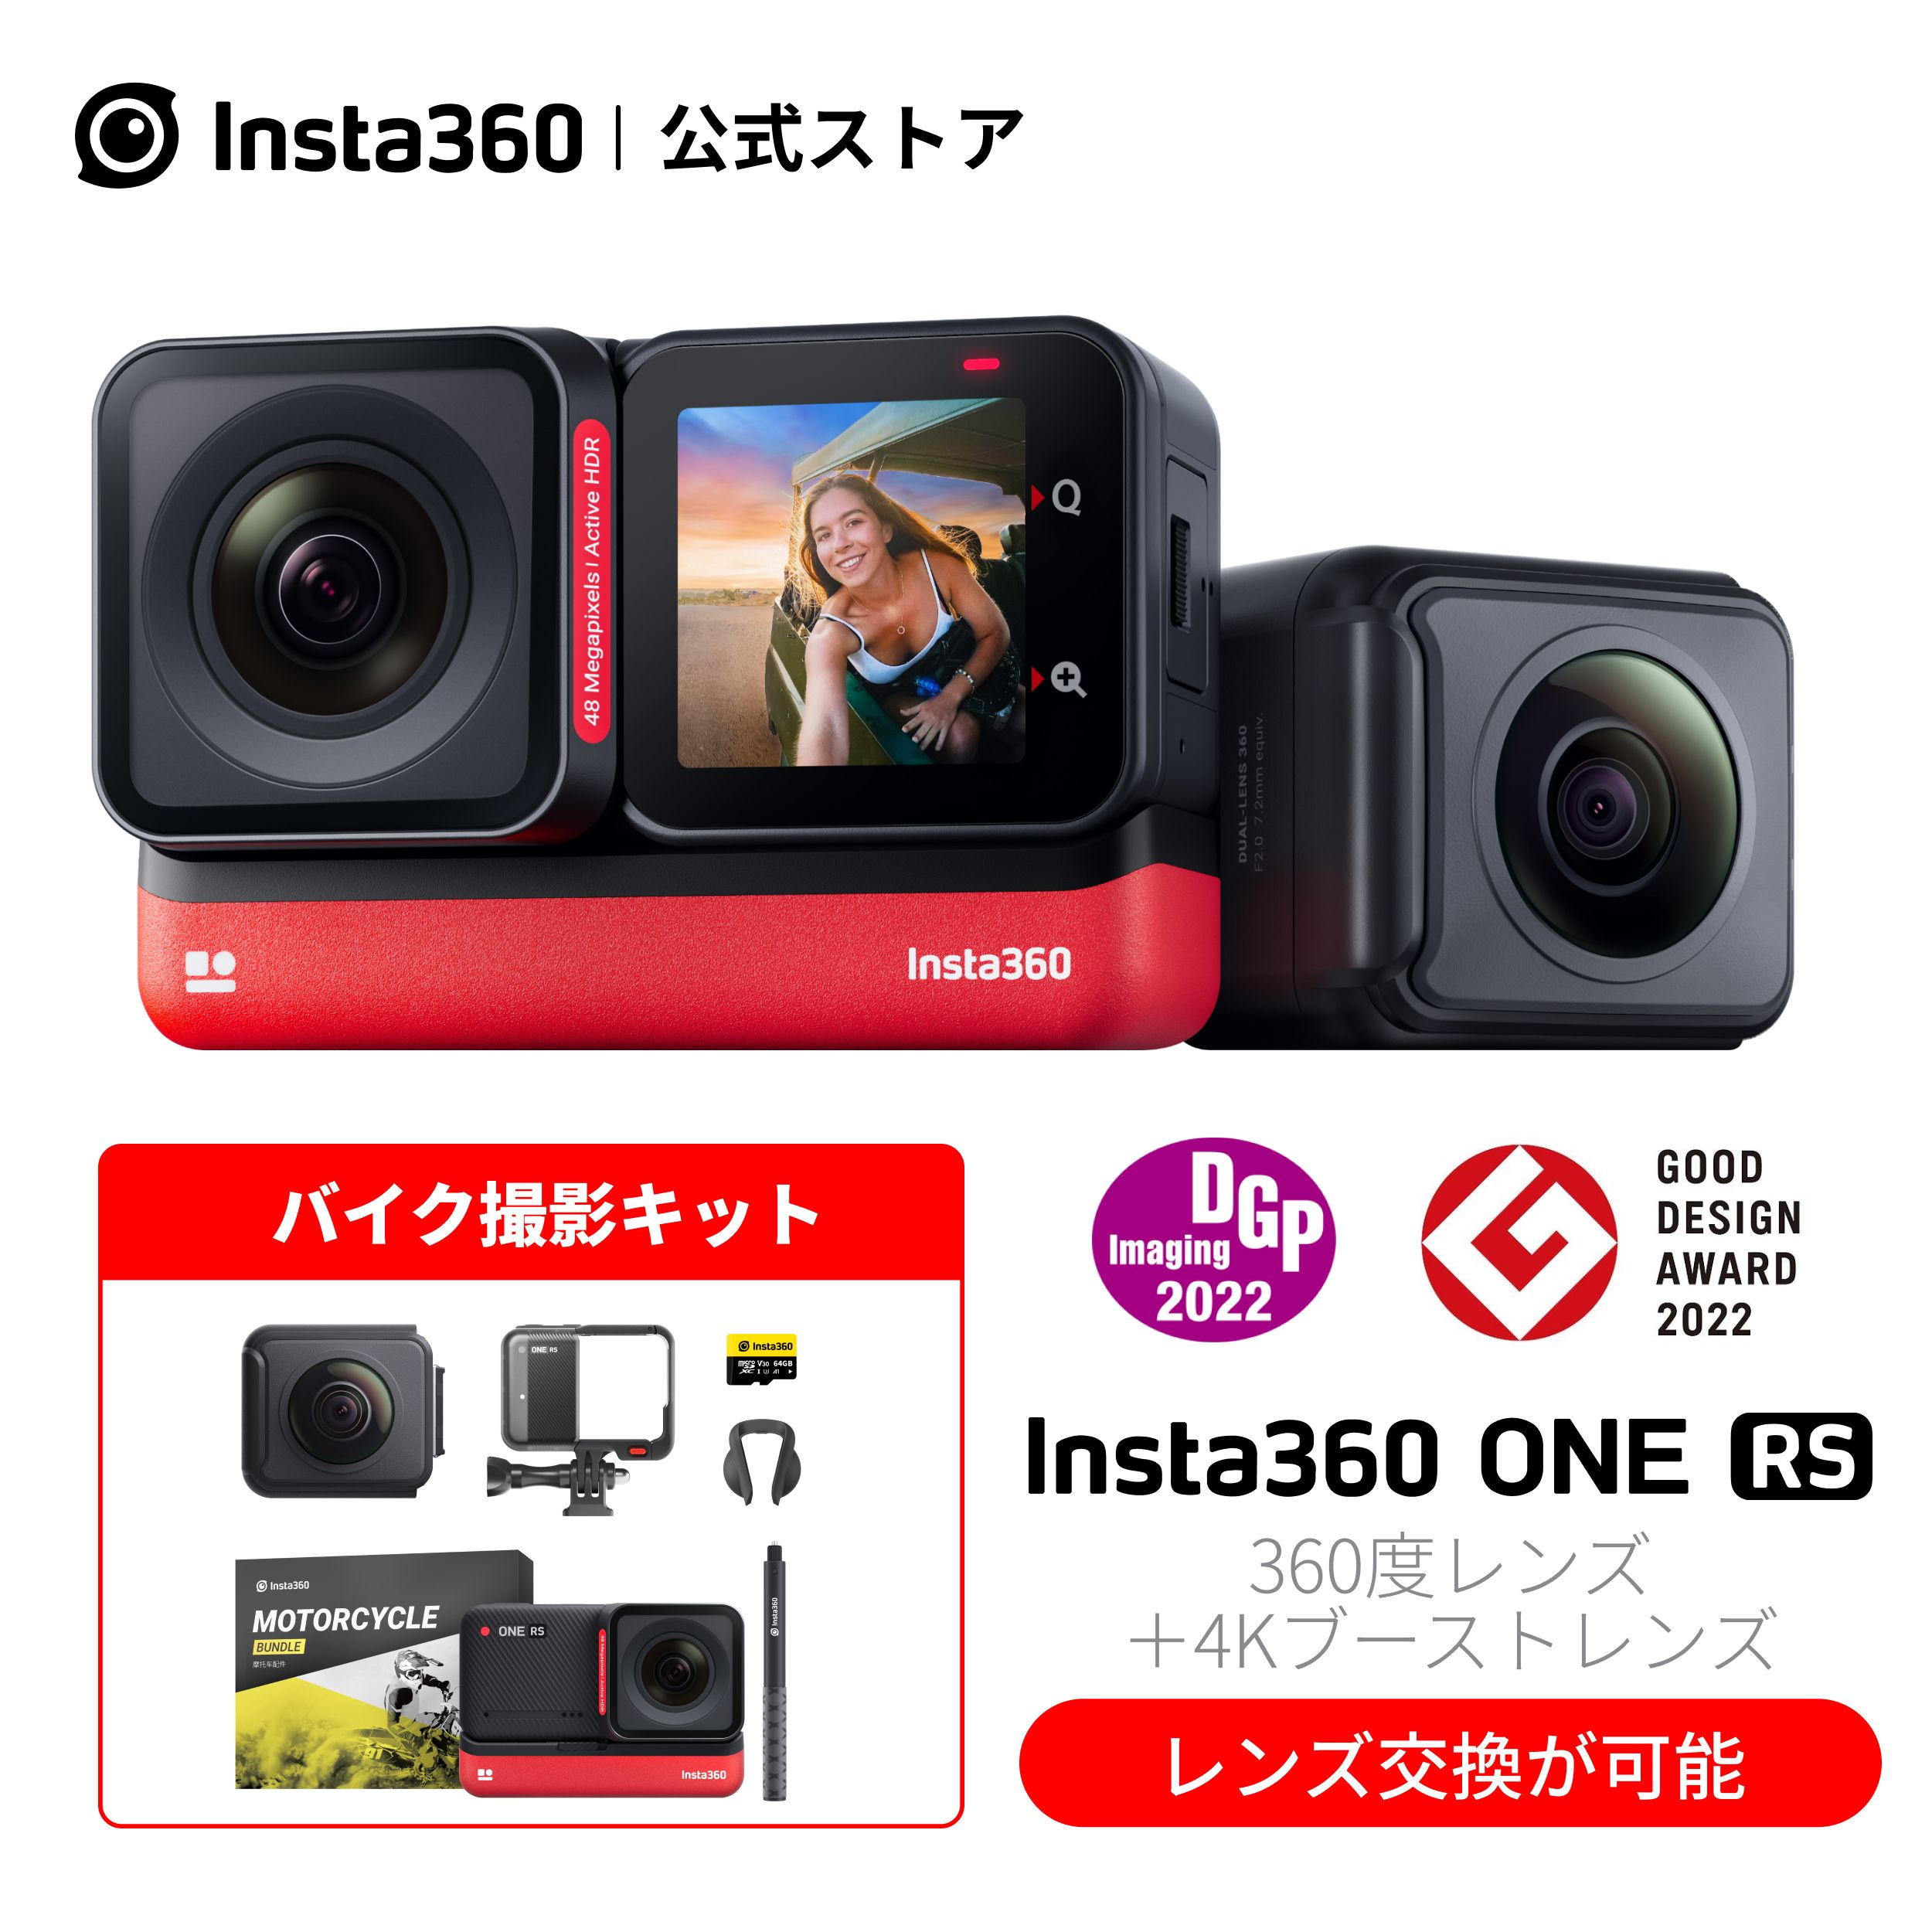 Insta360 ONE RS ツイン バイク撮影キット|あす楽インスタ360 レンズ交換対応アクションカメラ